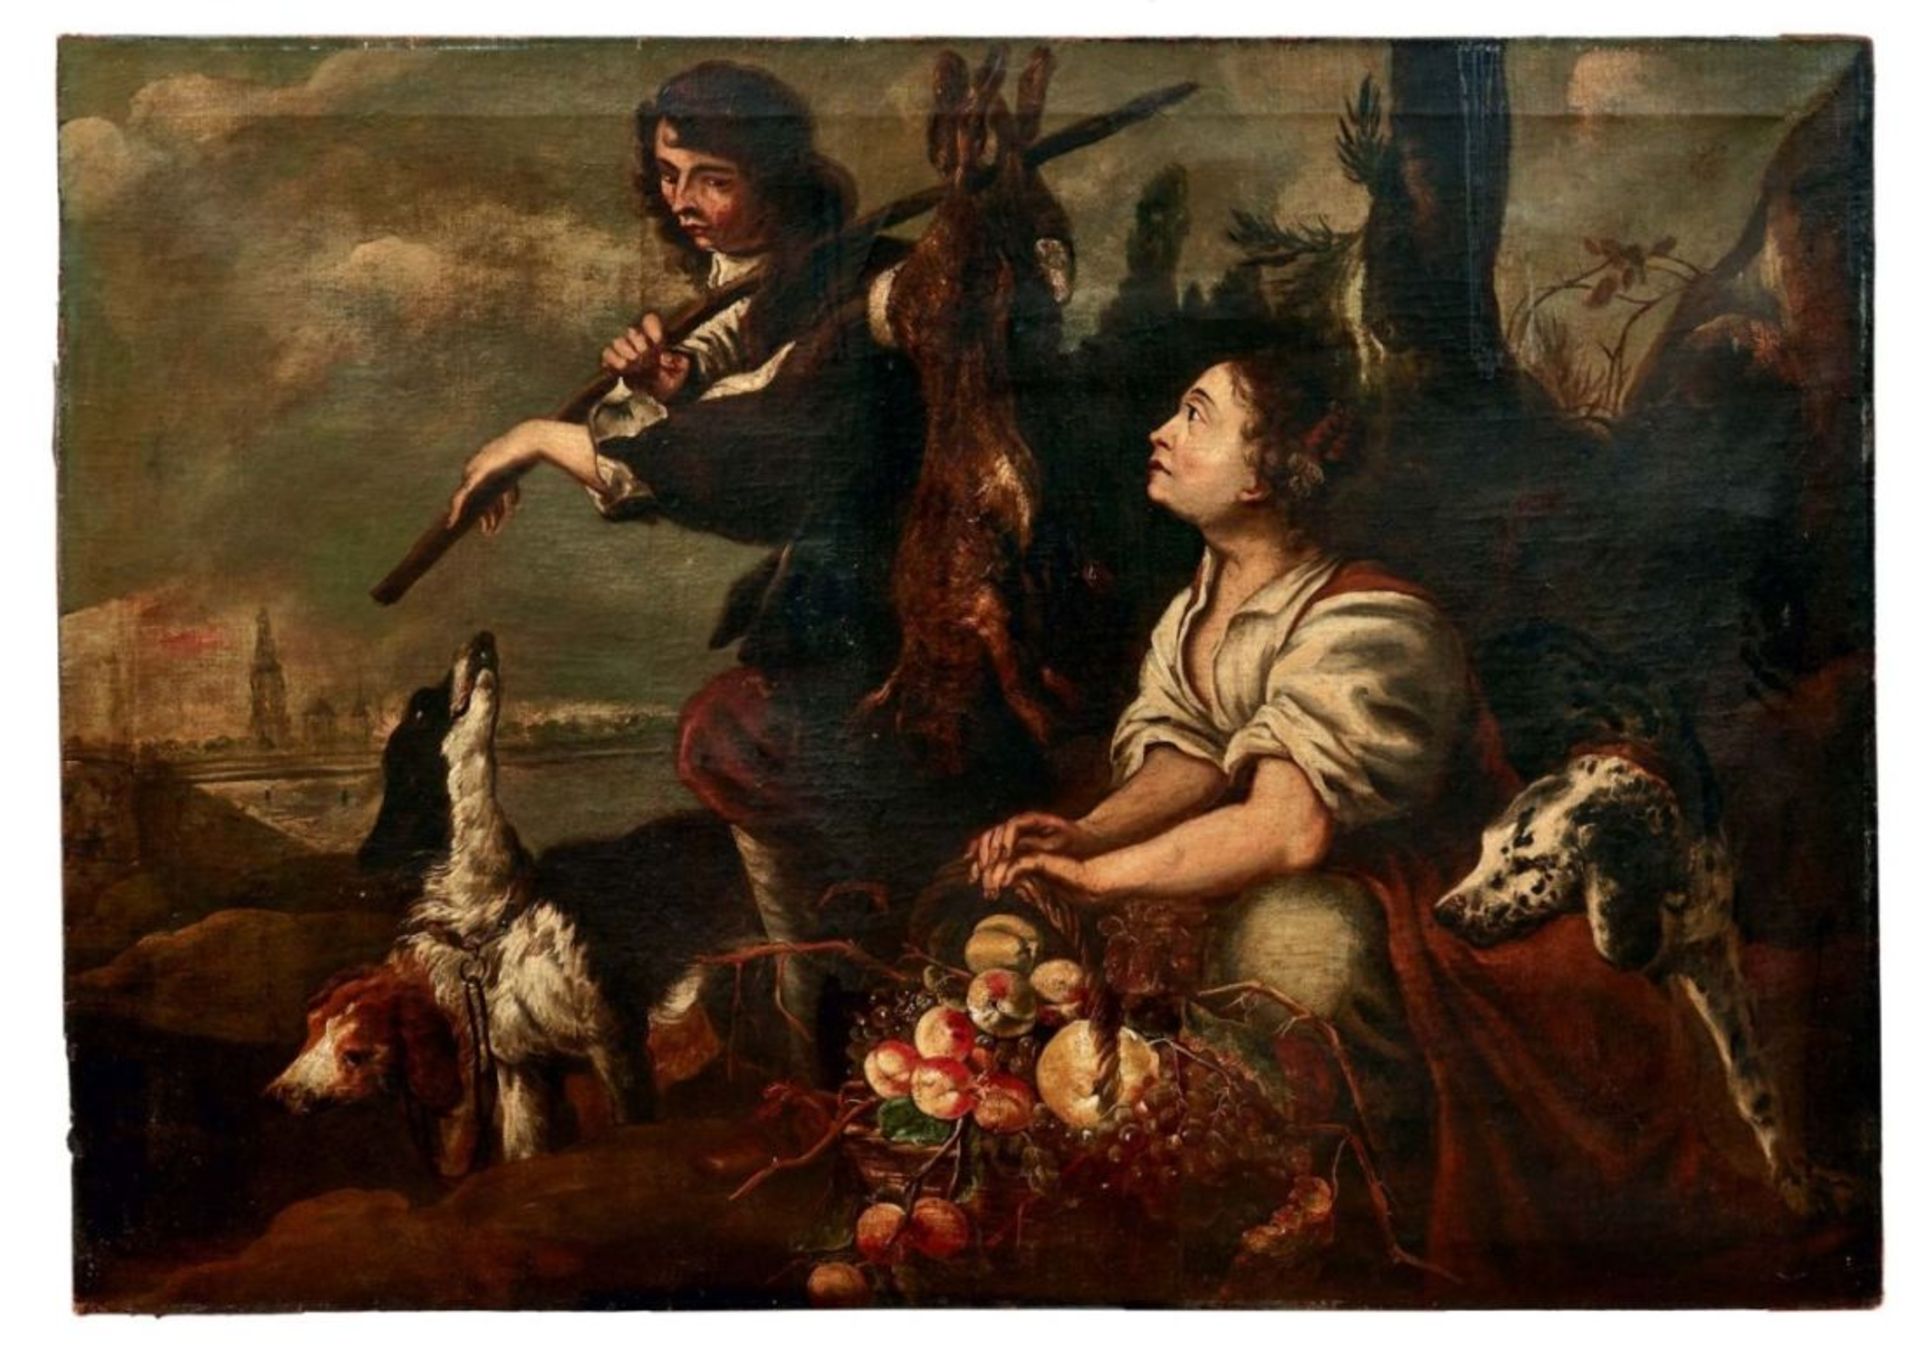 Großes JagdbildFlämischer Meister des 17. JahrhundertsUferlandschaft mit Jäger, erlegten Hasen auf